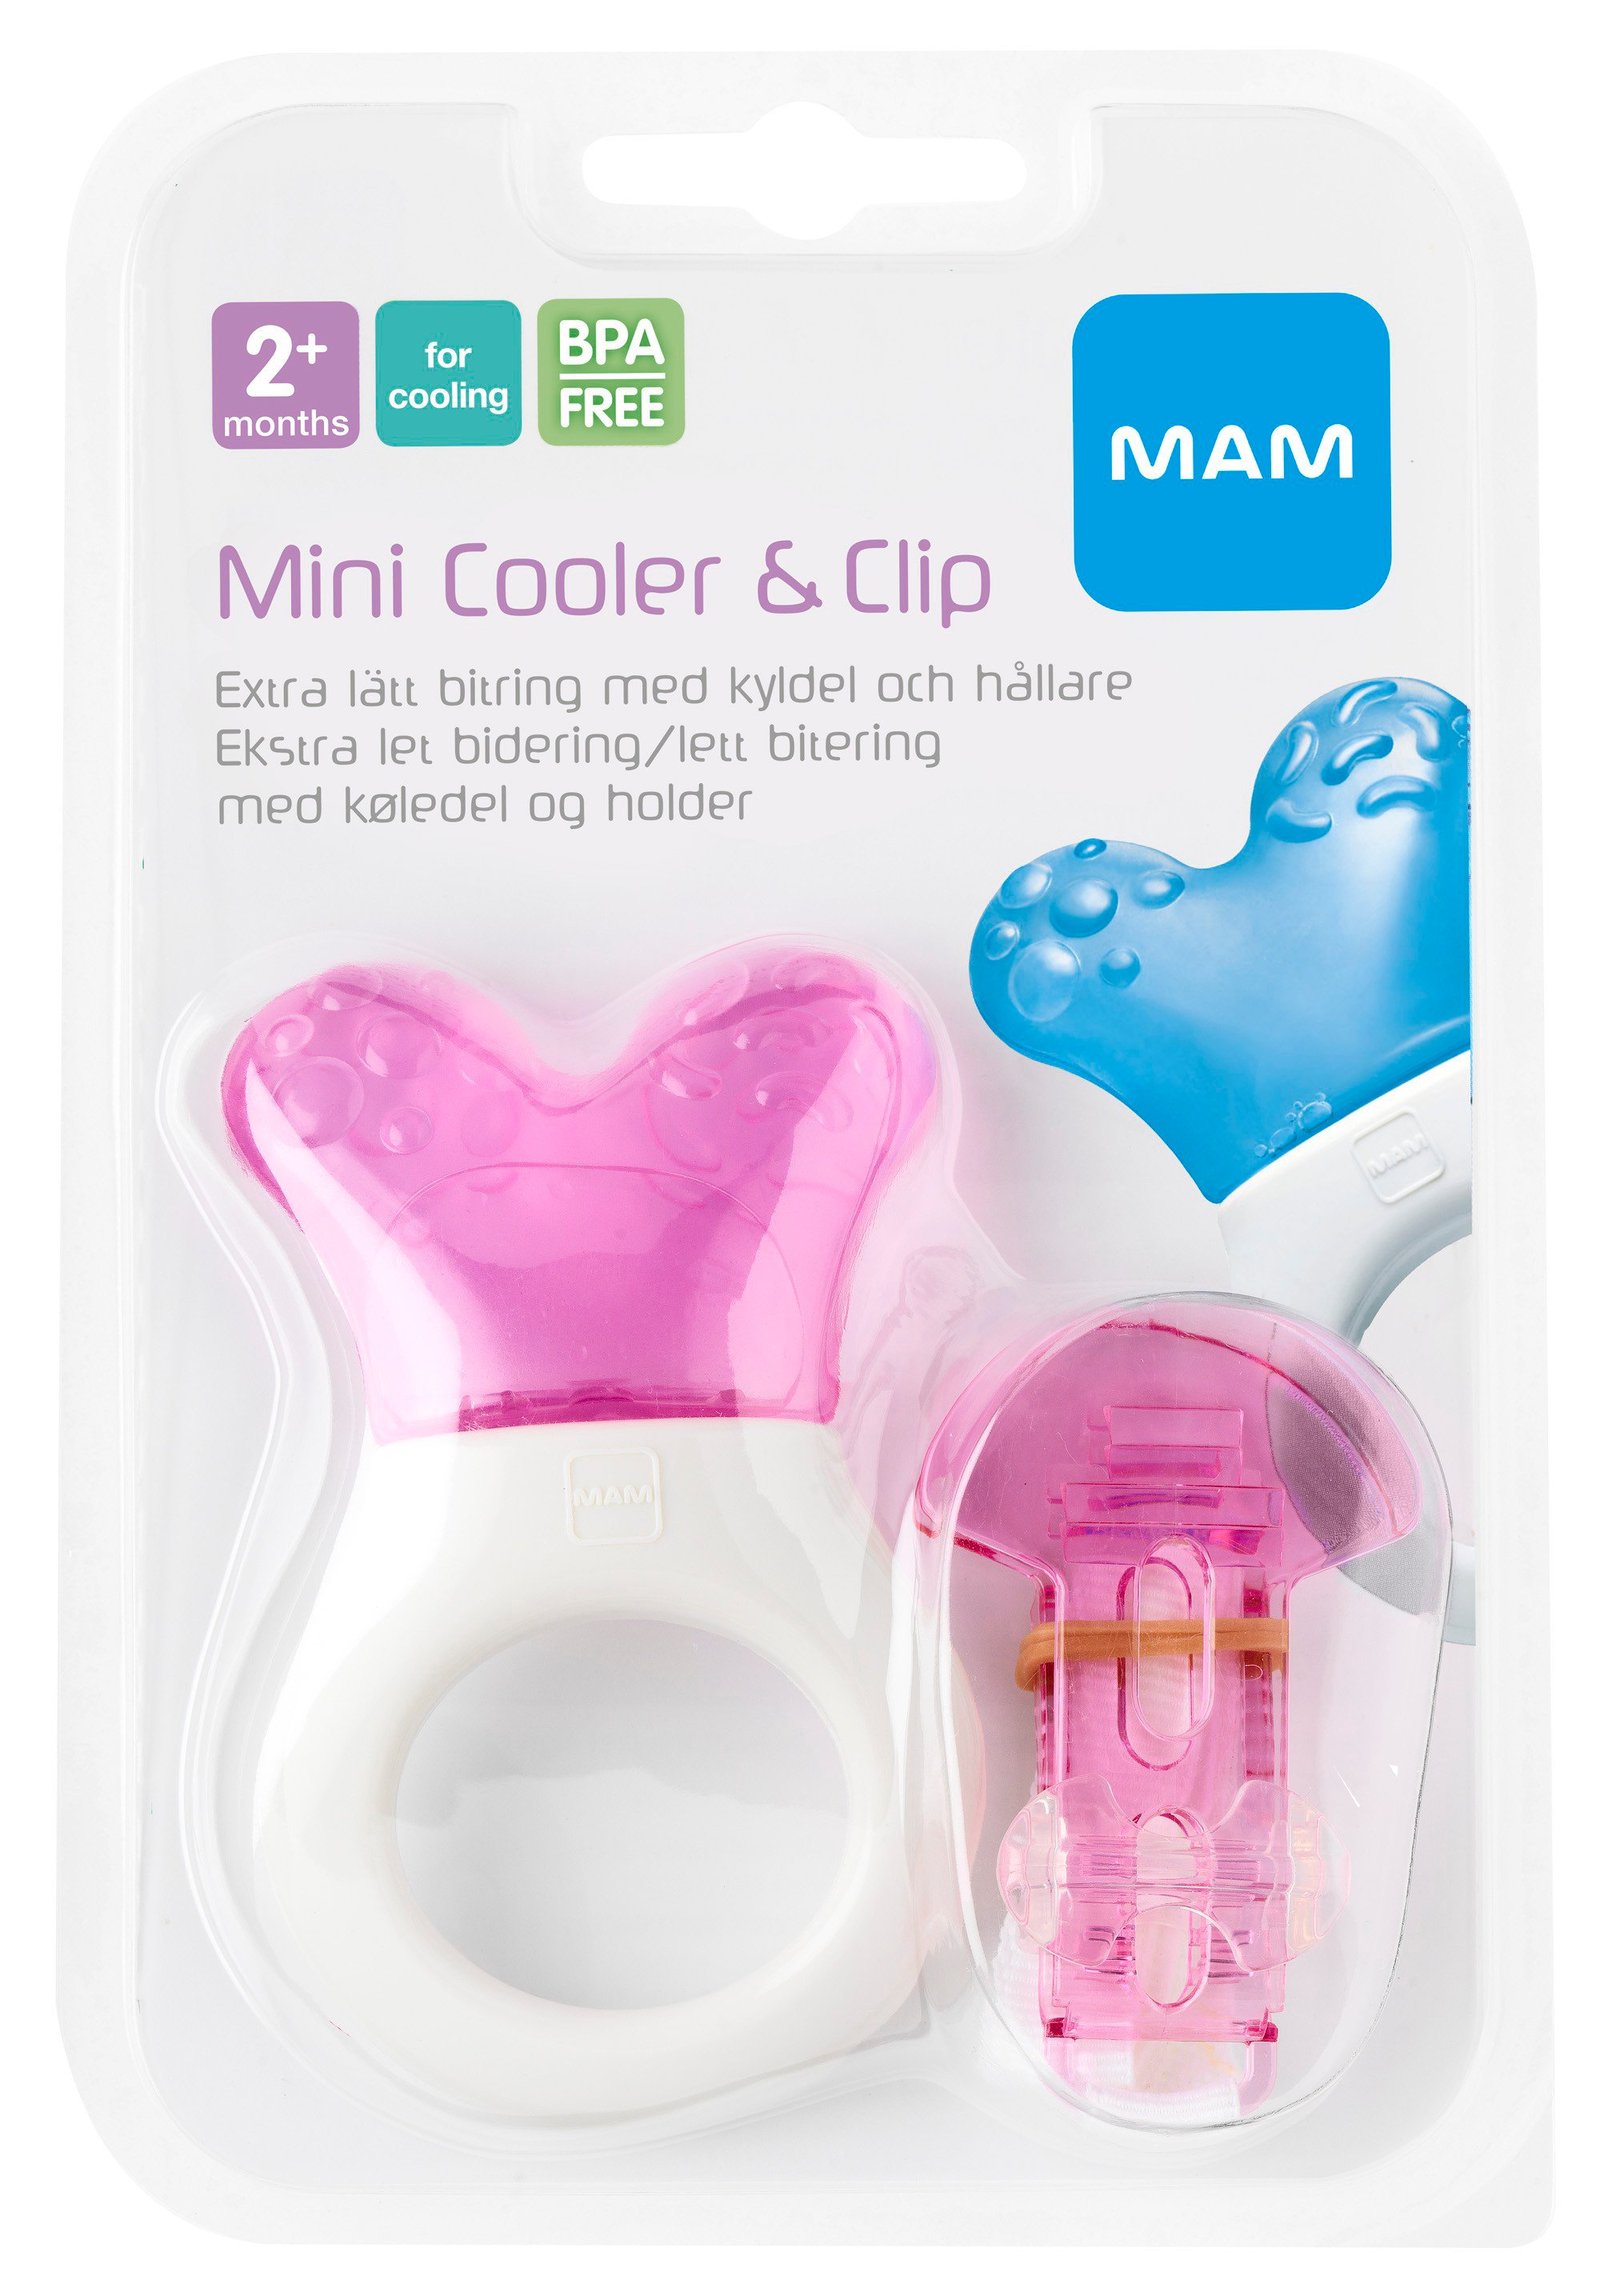 MAM Mini Cooler & Clip Kylbitring 2+ Månader 1 st - Olika färger